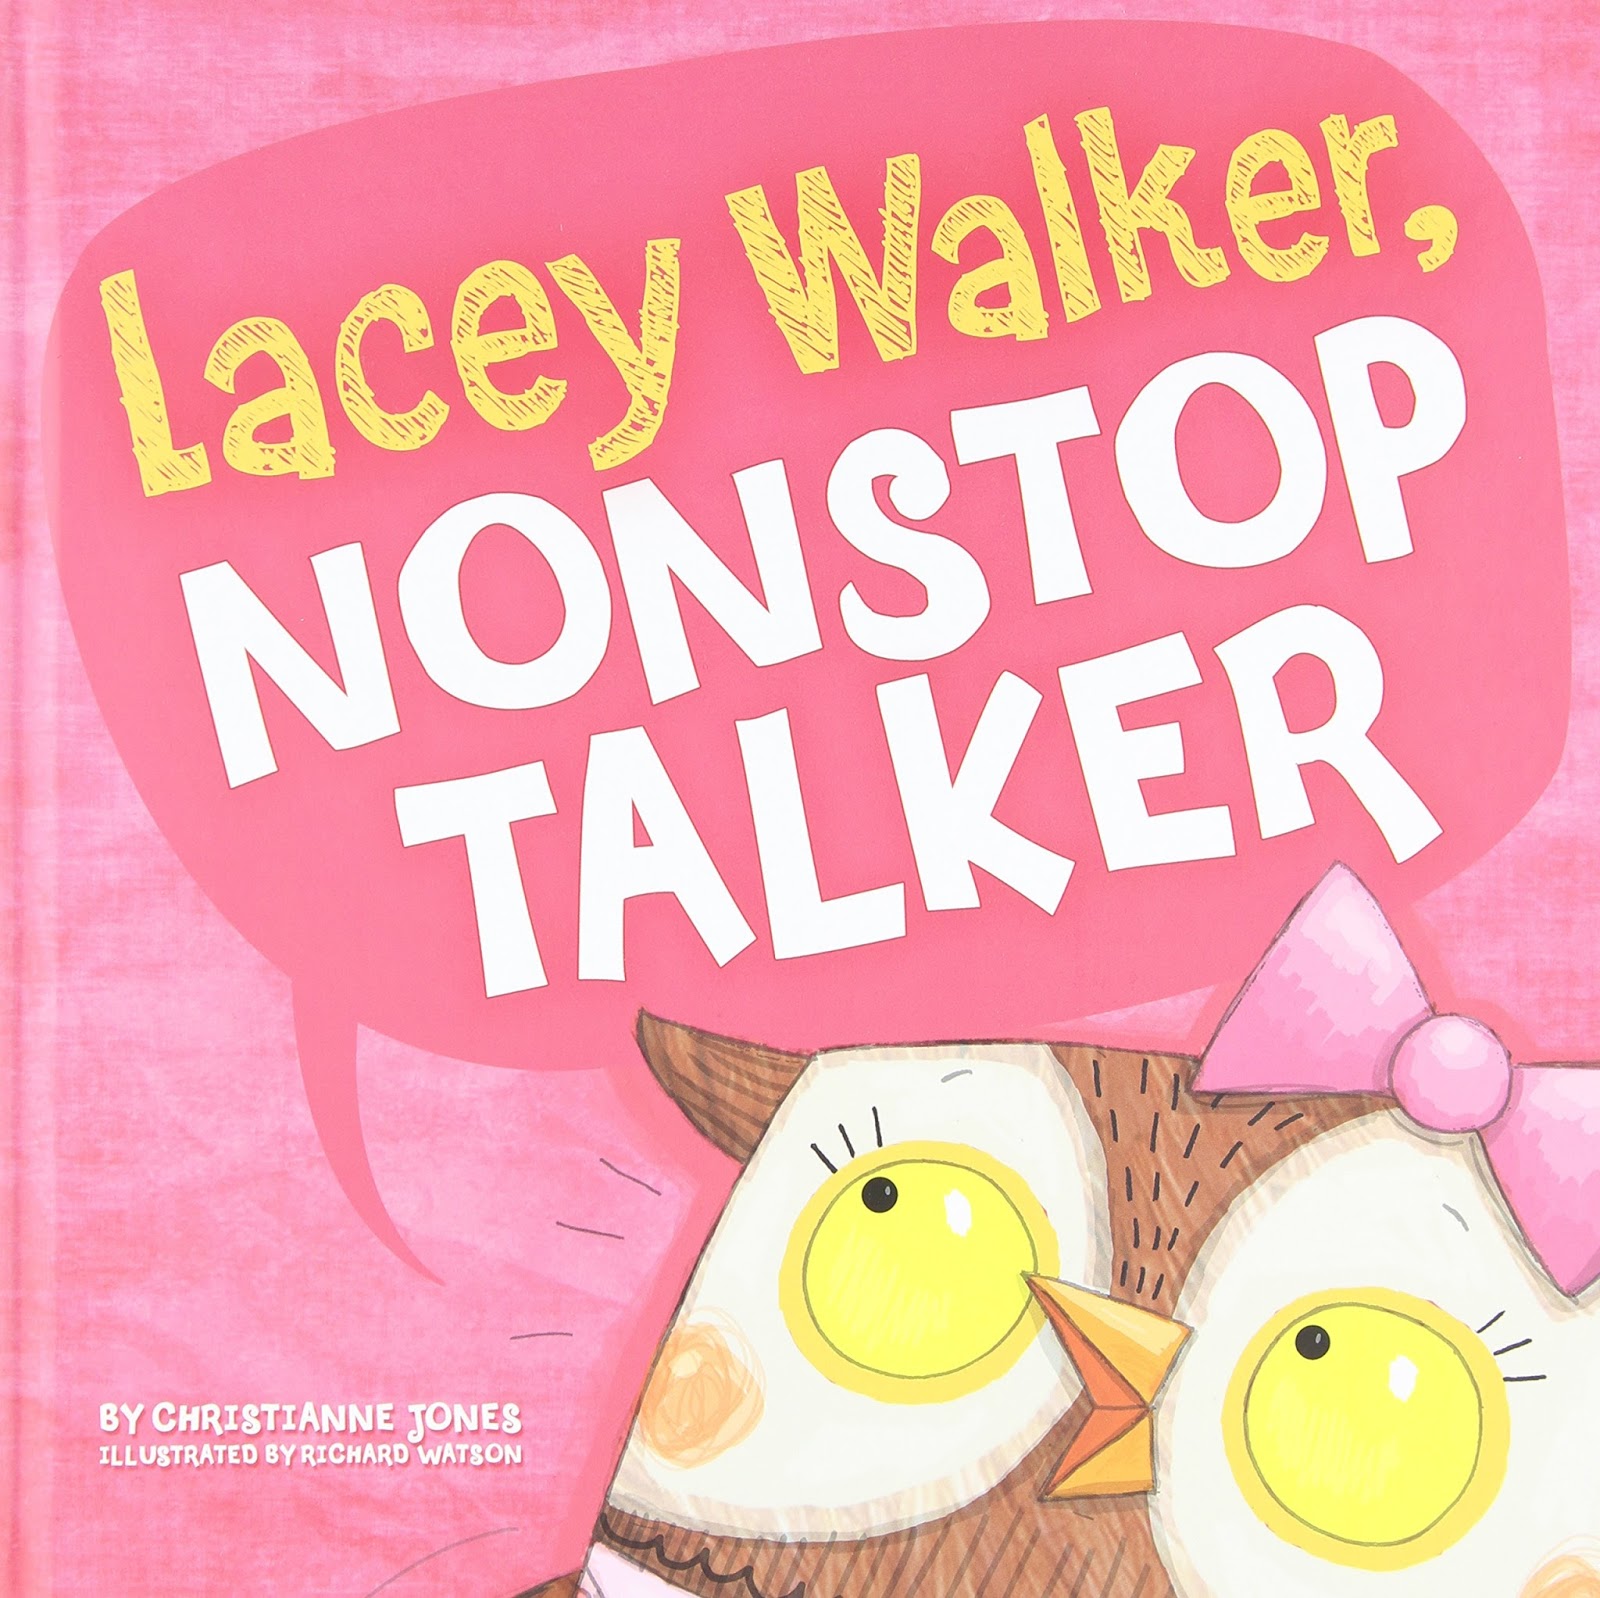 Image result for lacey walker nonstop talker book